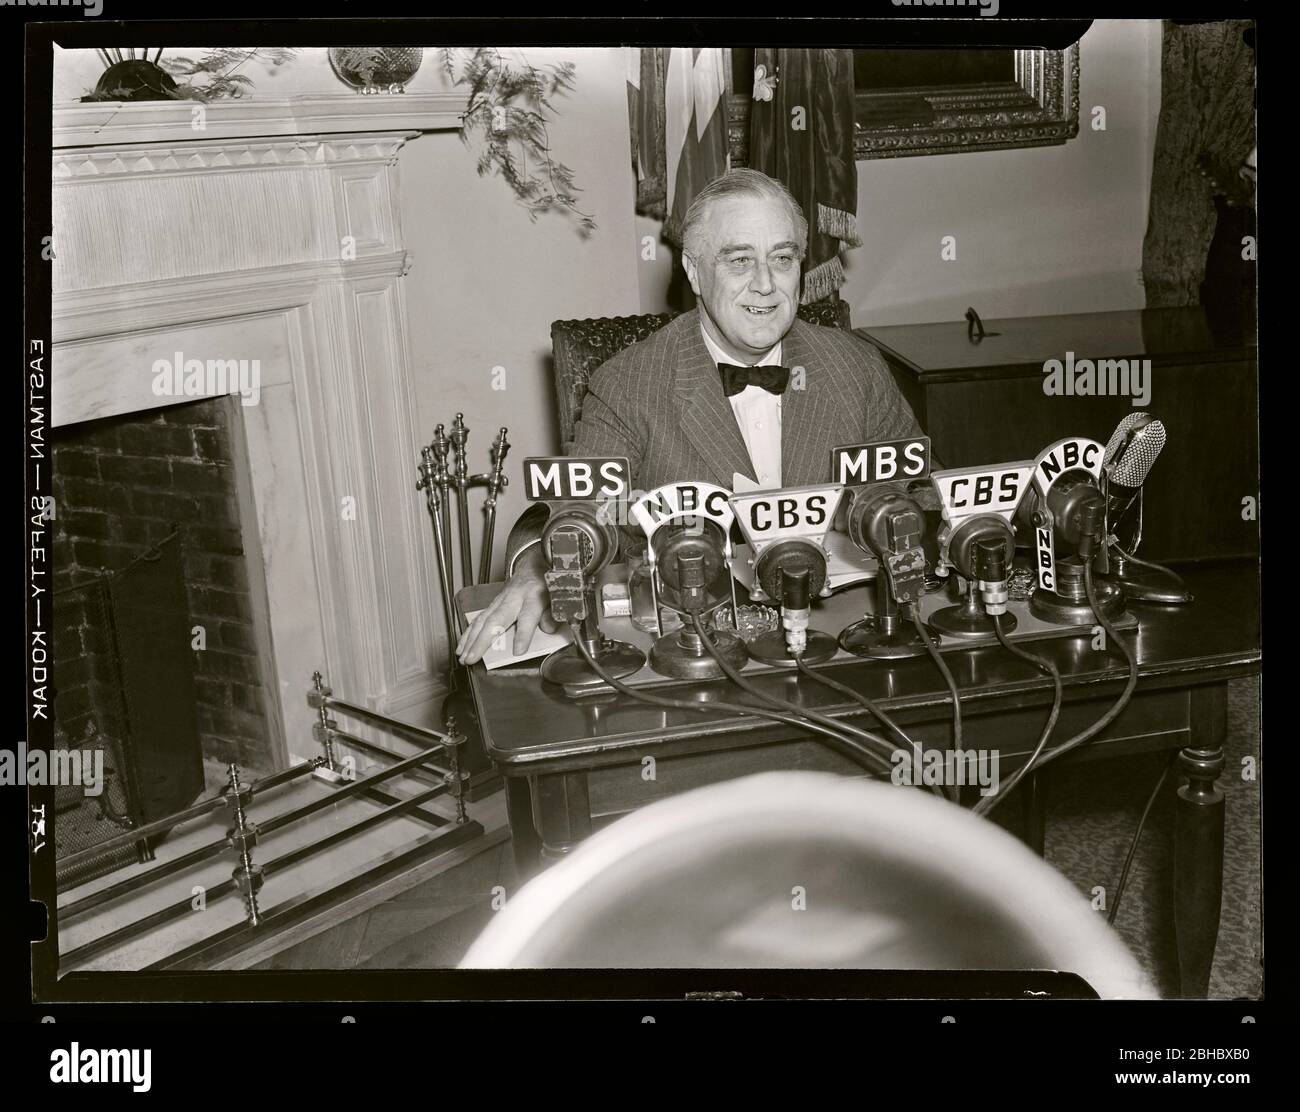 Le président Franklin D. Roosevelt 'FDR' sourit avant de donner une adresse radio deux jours après l'attaque de Pearl Harbor, 1941. Image de 4 x 5 pouces négative. Banque D'Images